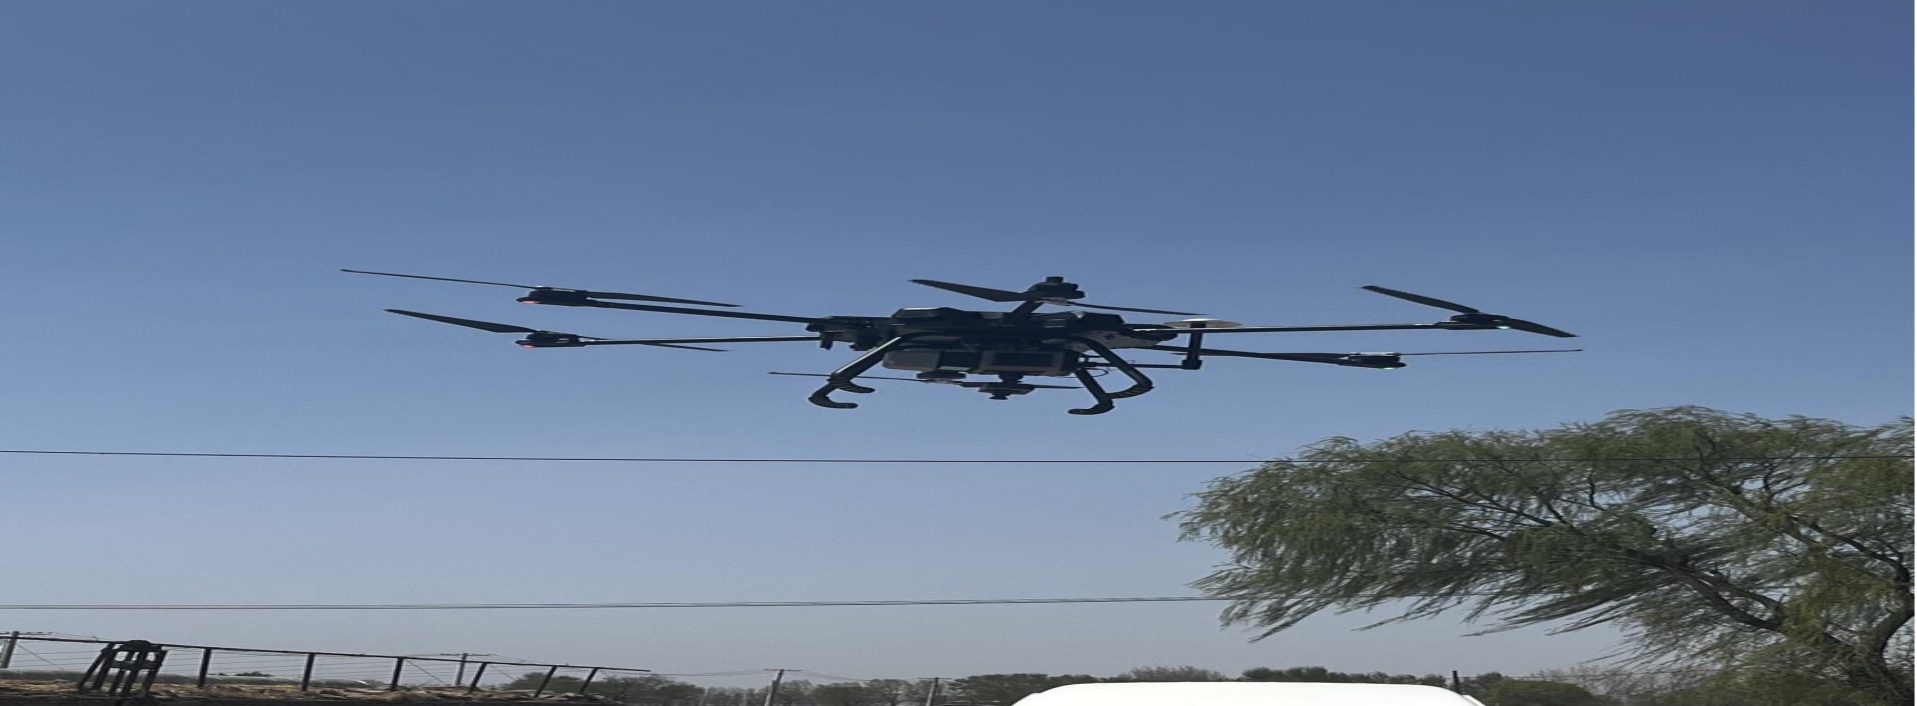 设计院在省内高速公路项目中首次采用无人机开展航测工作